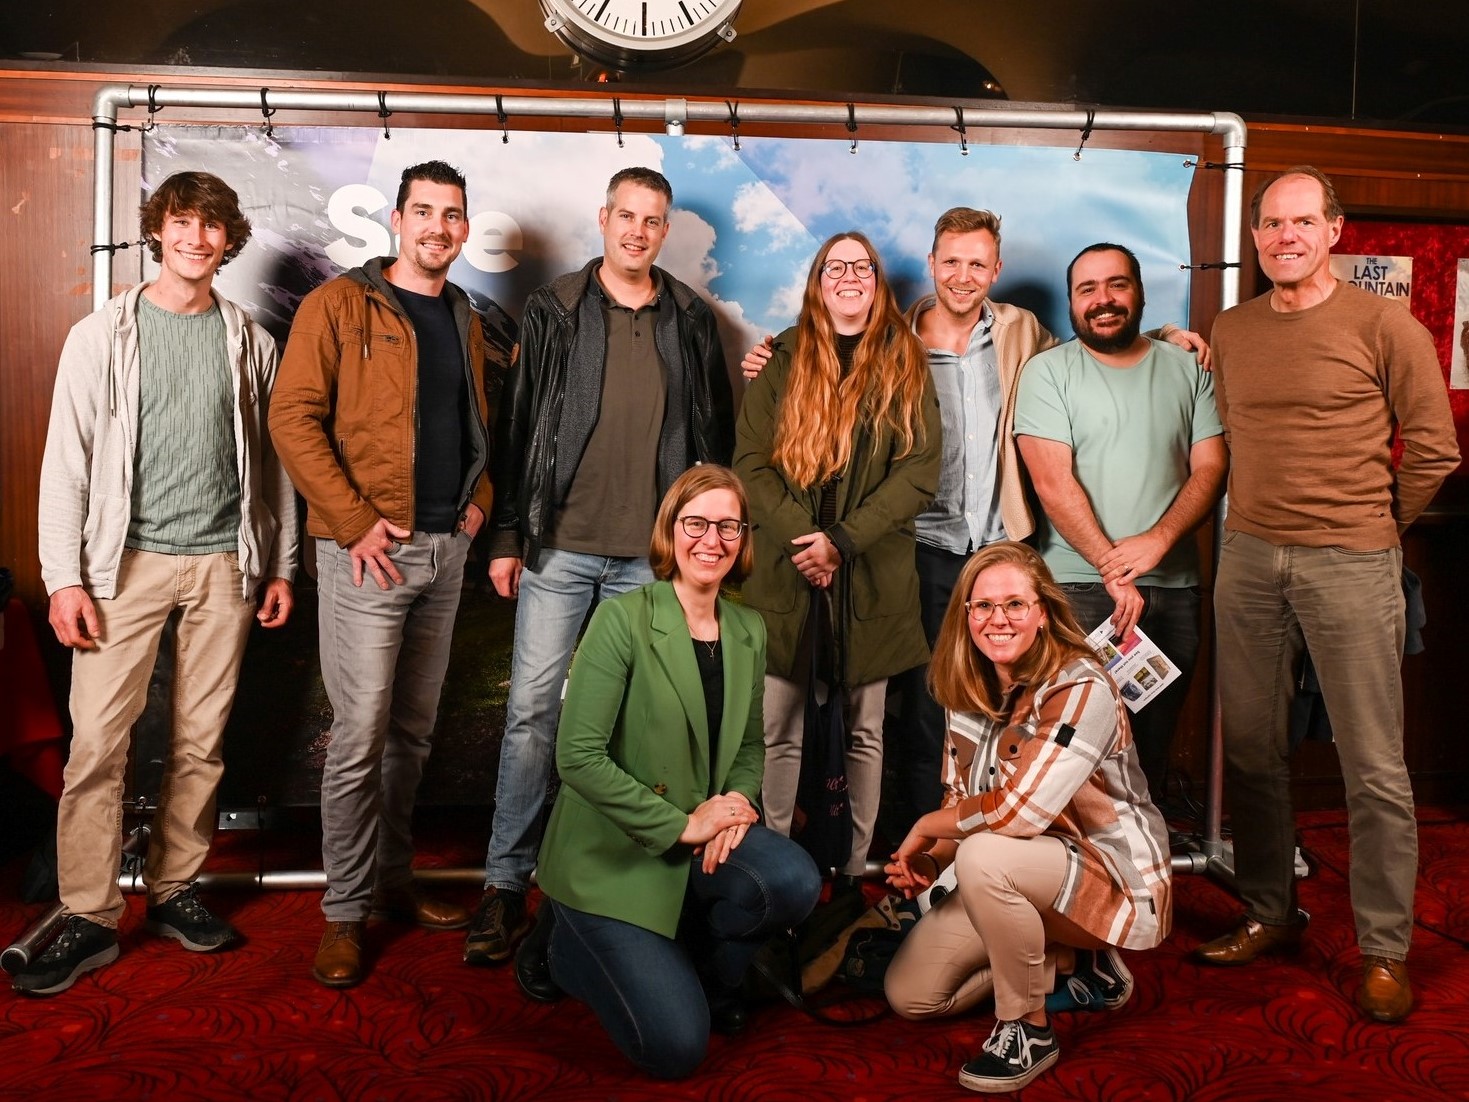 Dutch Mountain Film Festival 2022 in Heerlen